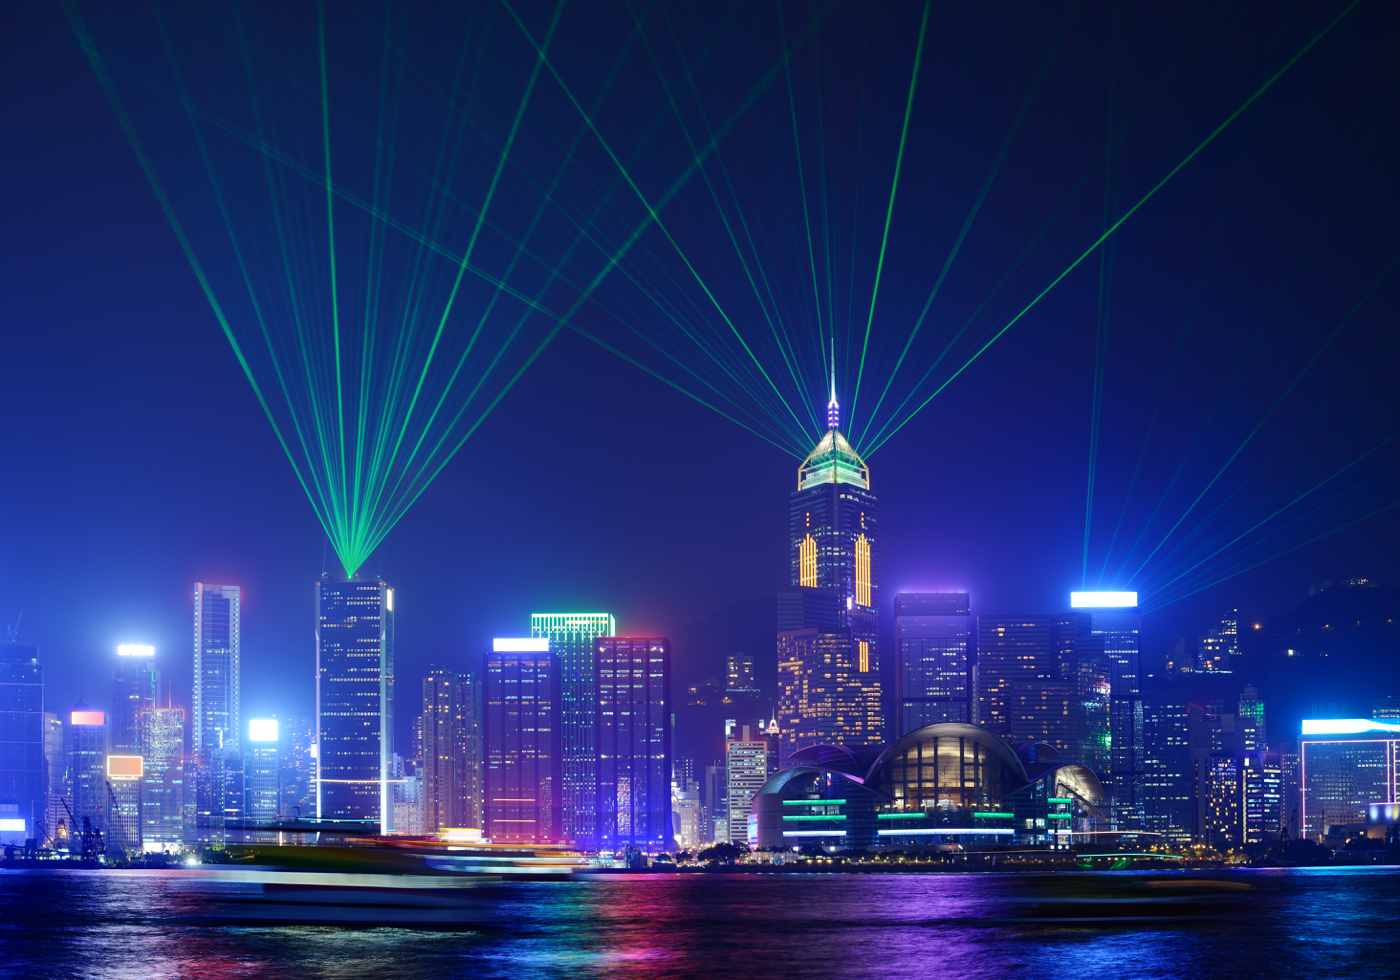 Christmas and New Year in China celebrate photo of Hong Kong at night 